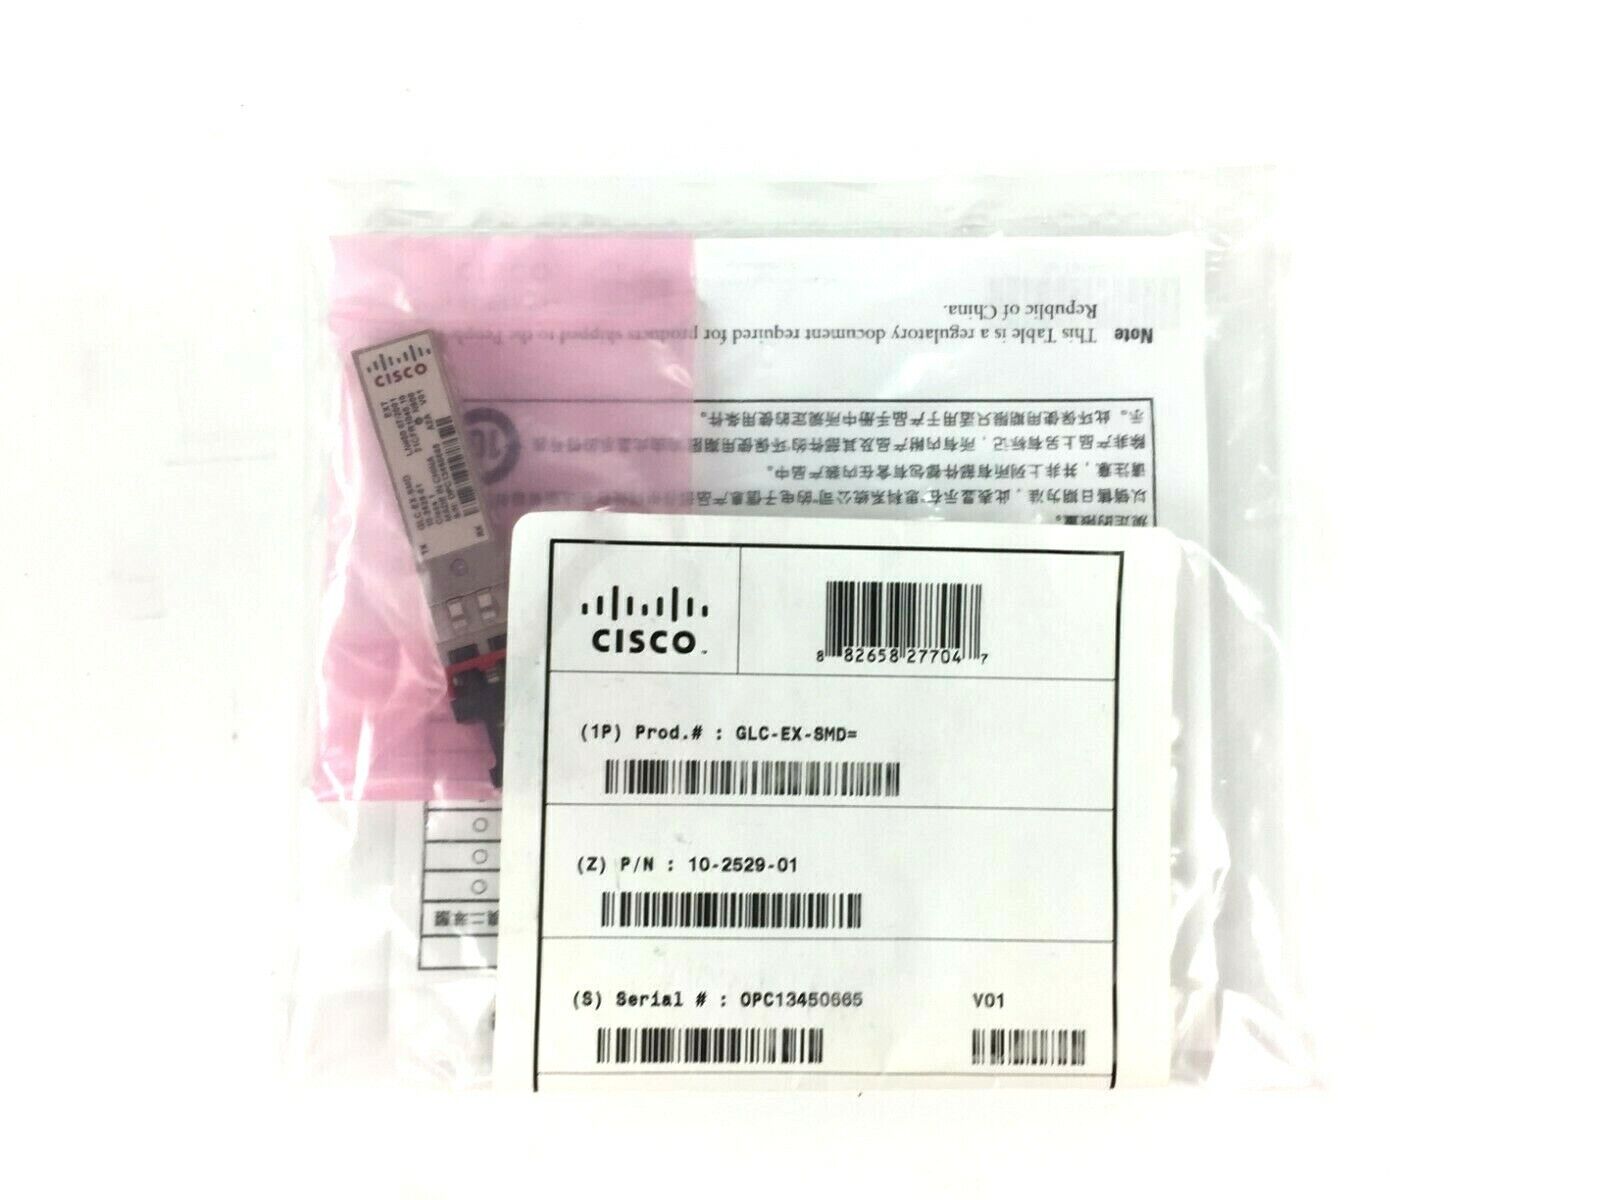 New Cisco GLC-EX-SMD 10-2529-01